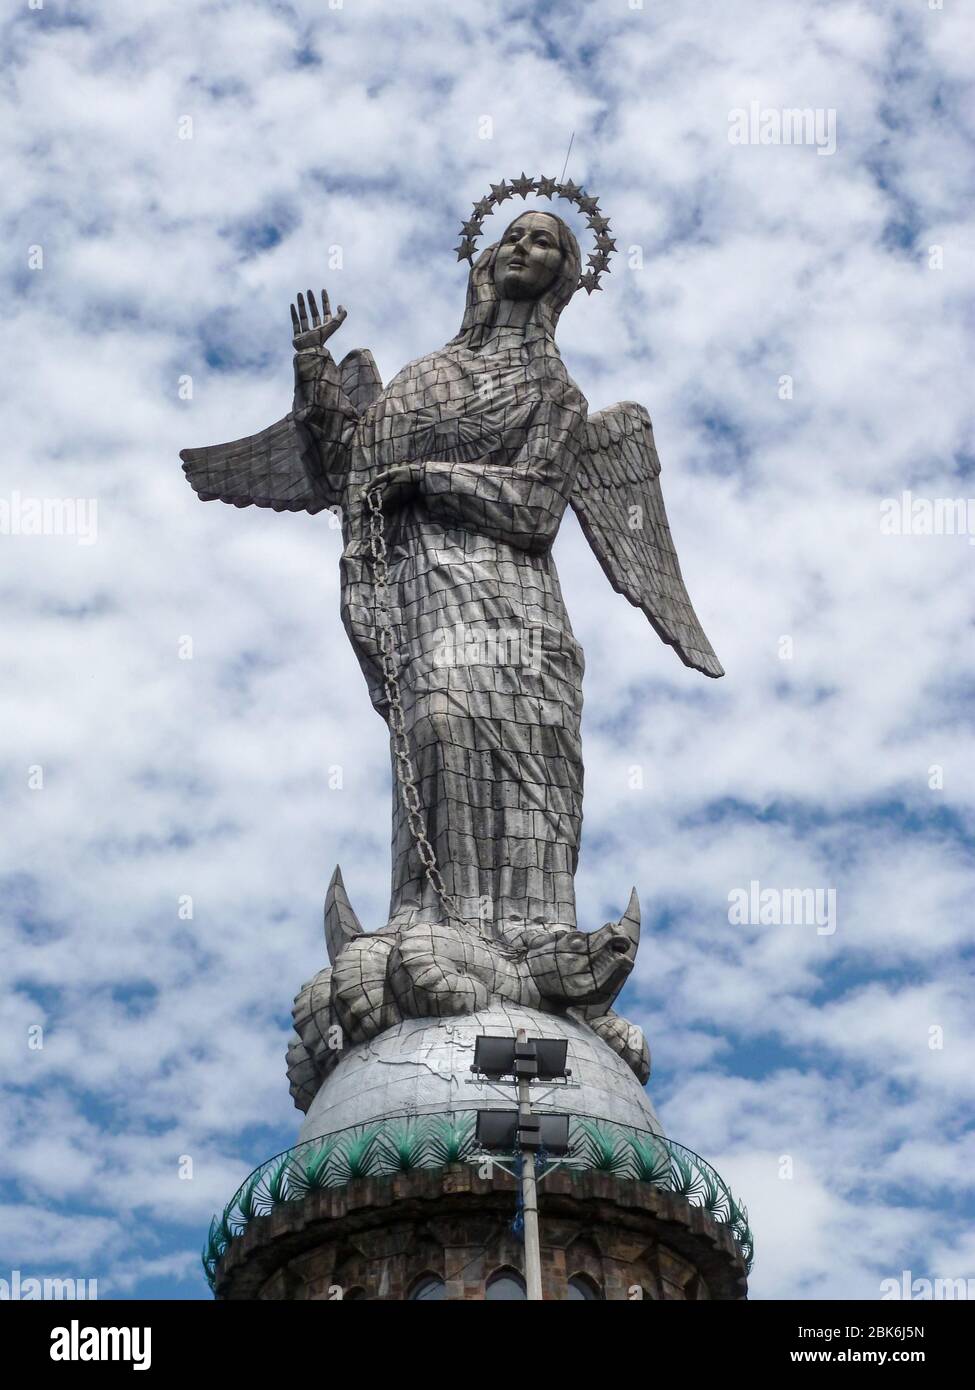 La statue de la Vierge de Quito avec quelques nuages Banque D'Images